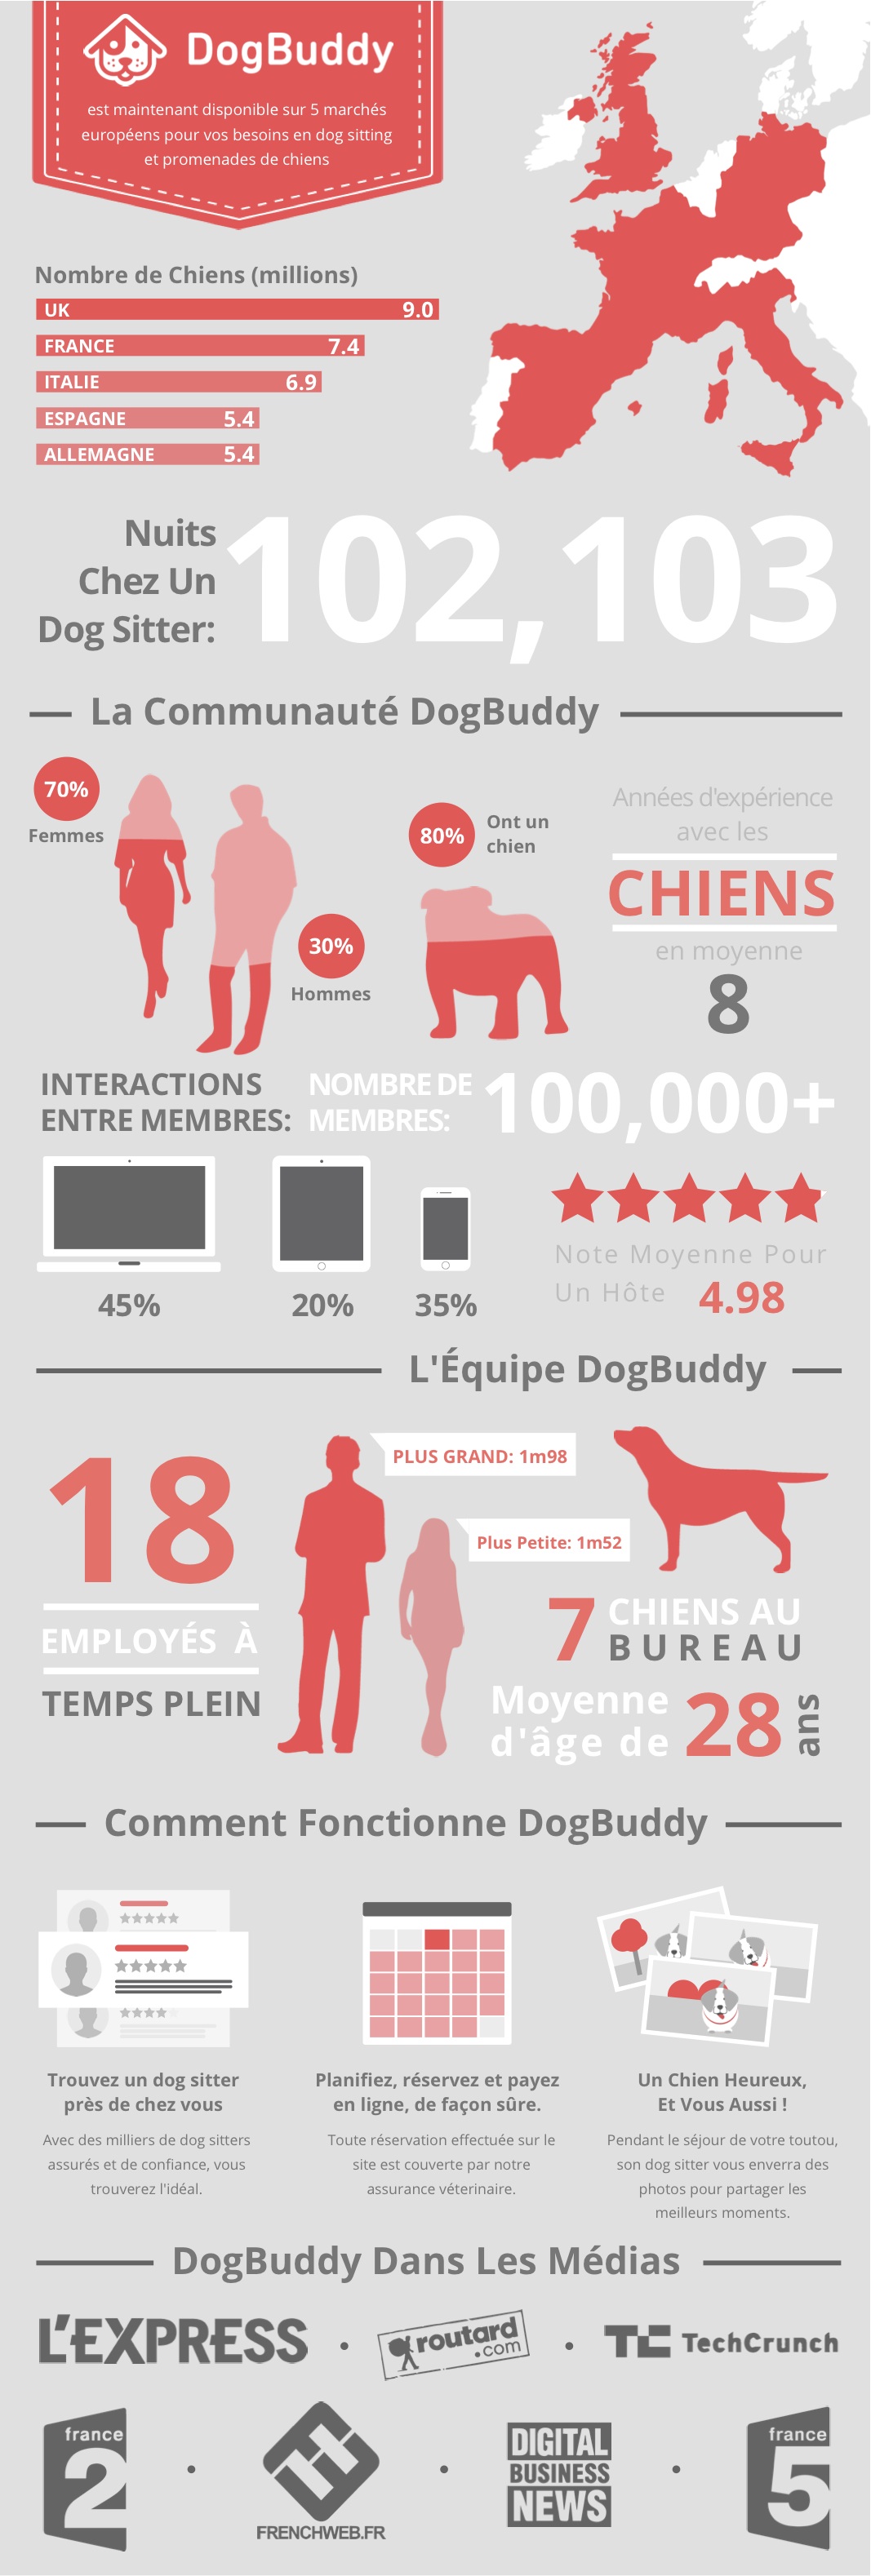 Infographie de DogBuddy